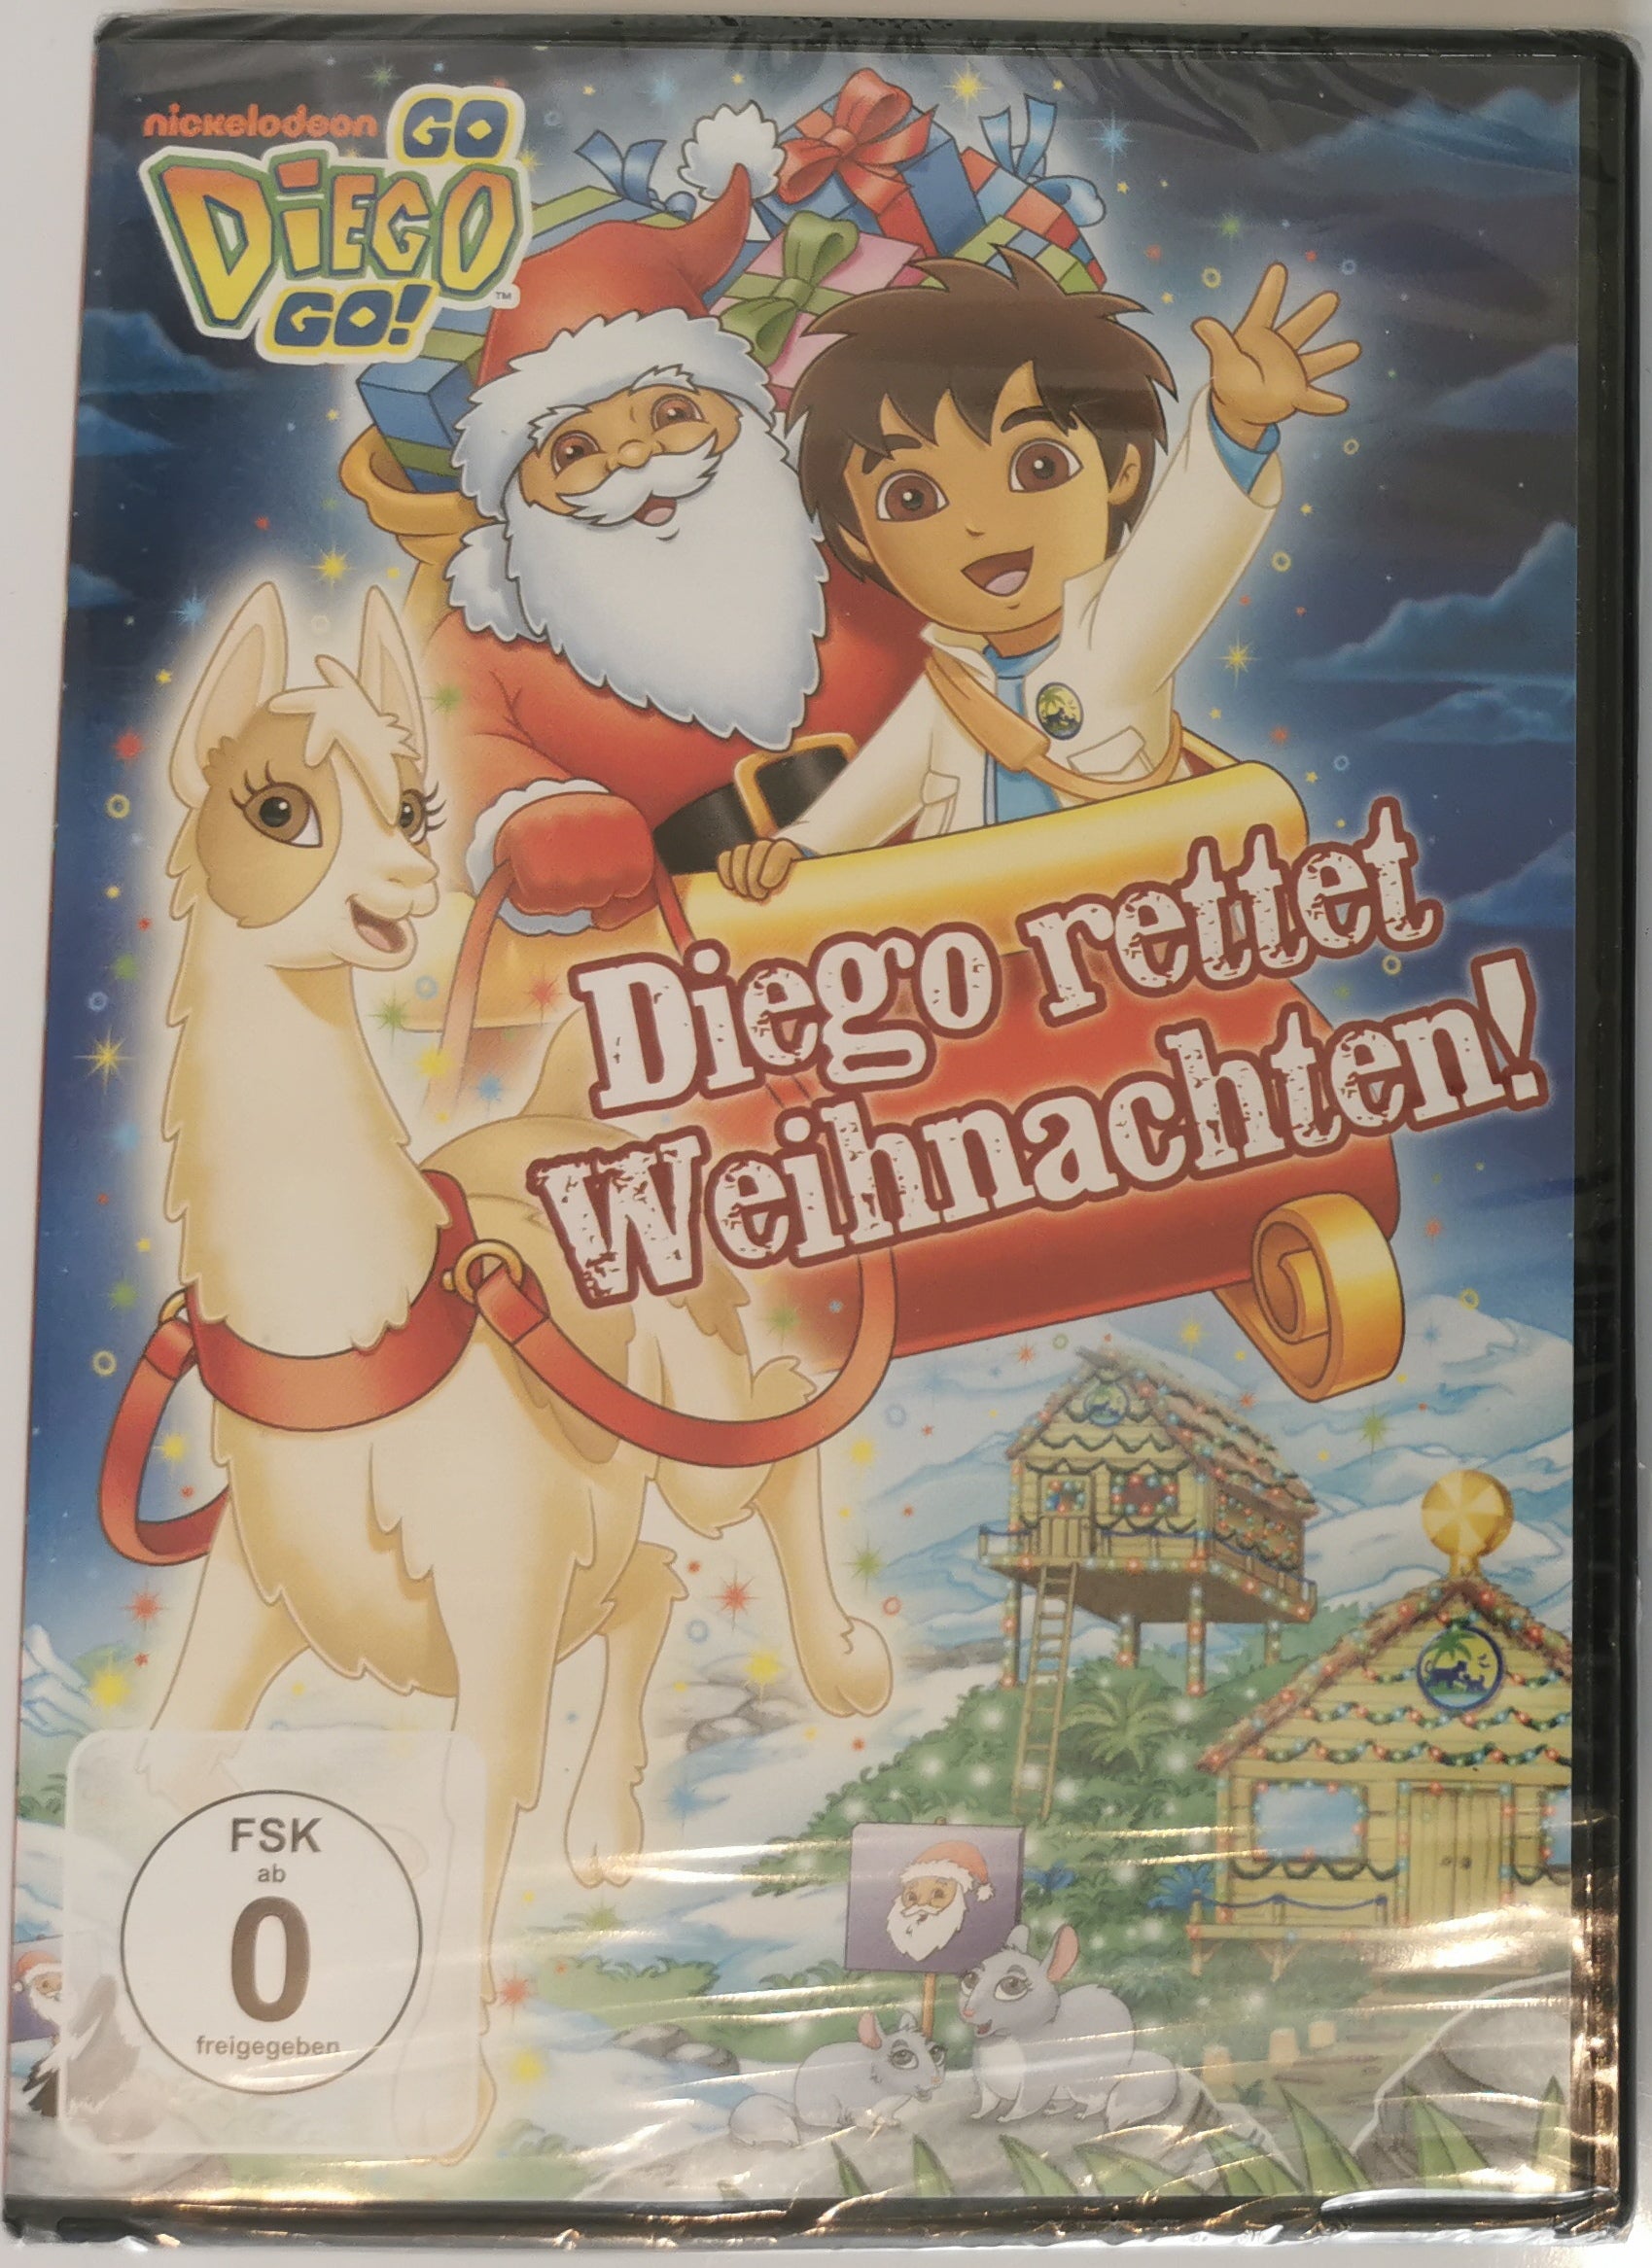 Go Diego! Go! Diego rettet Weihnachten! (DVD) [Neu]